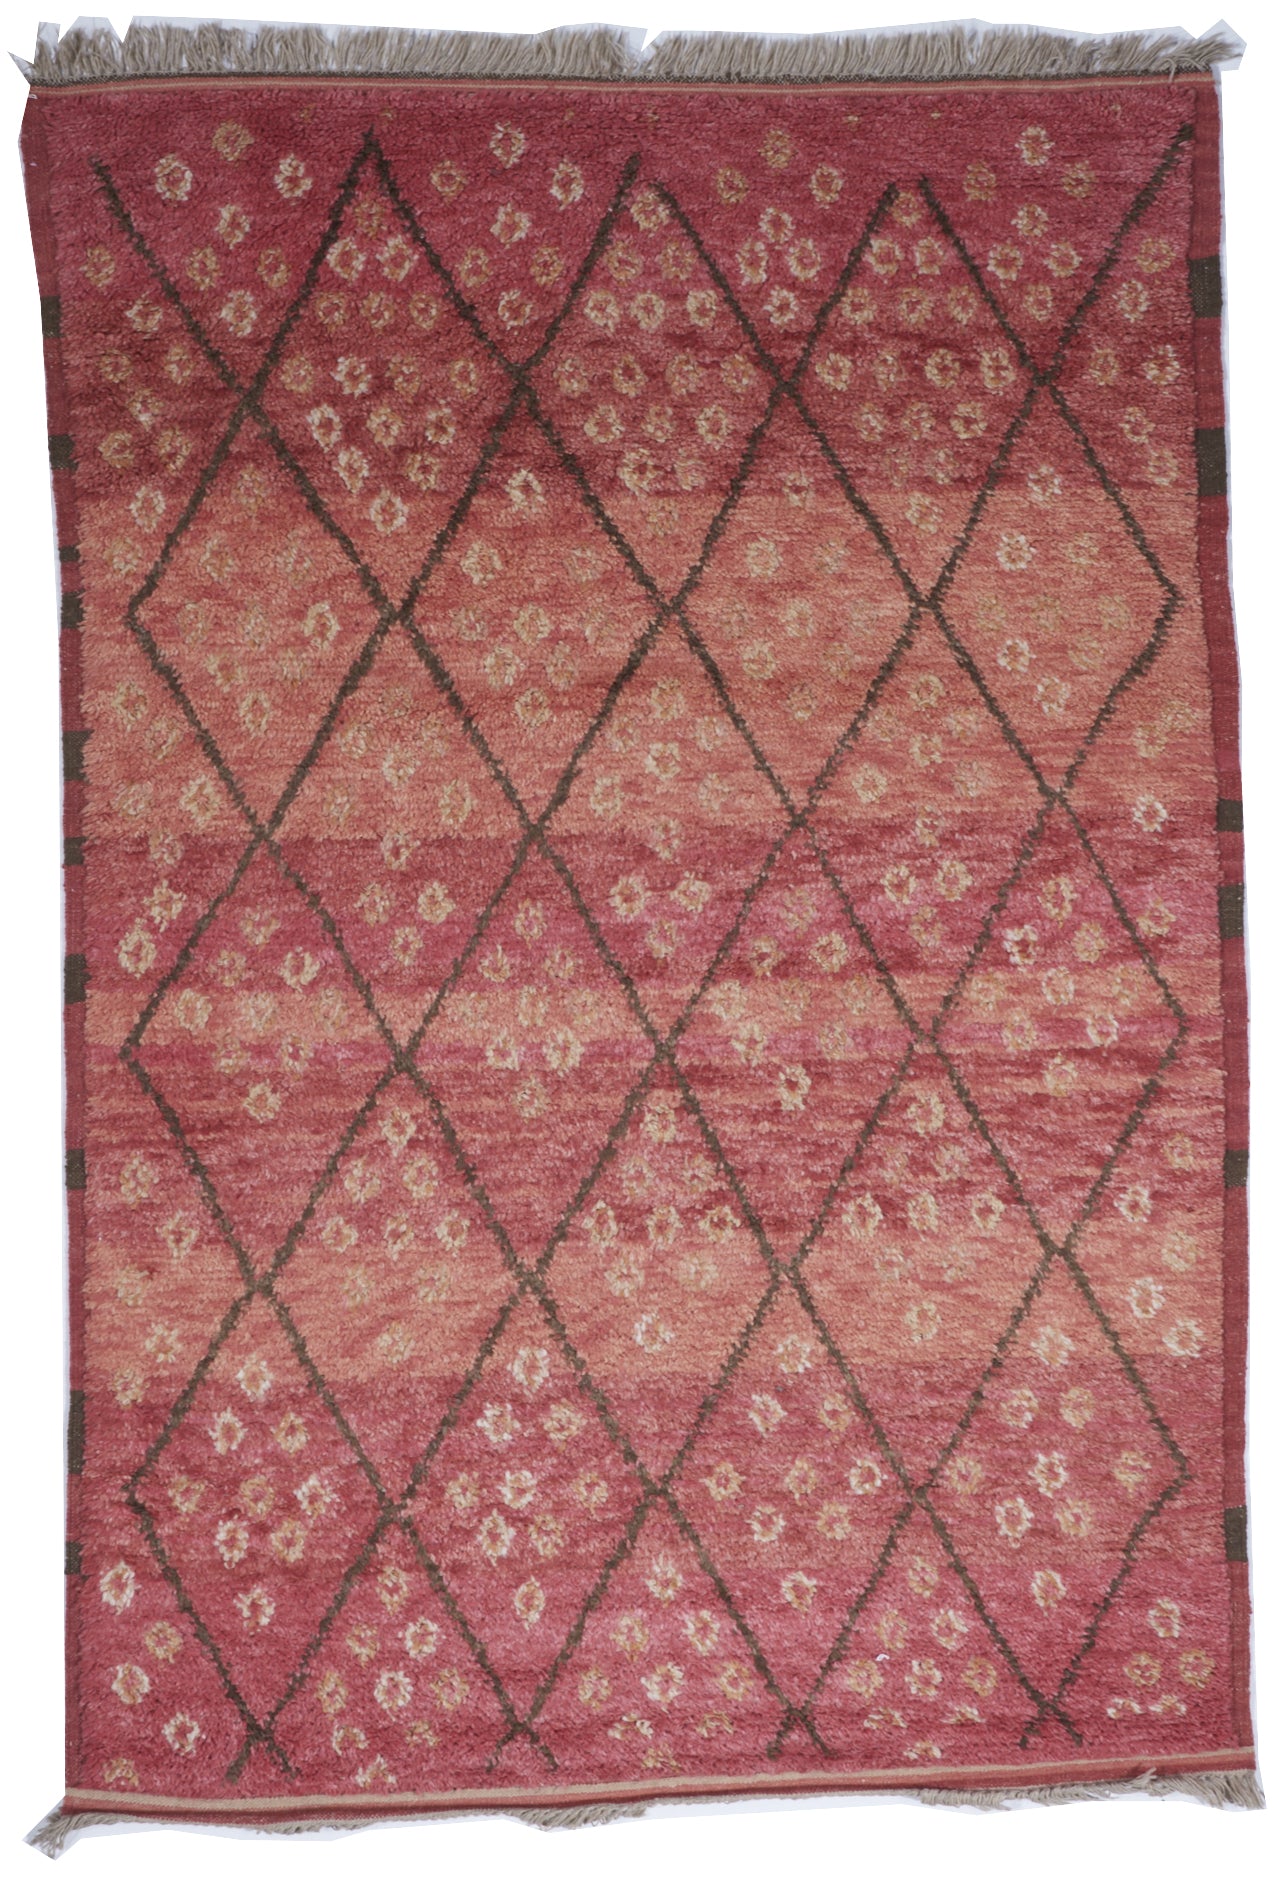 Moroccan Flatweave Red Orange Wool Rug 6' x 9' - IGotYourRug